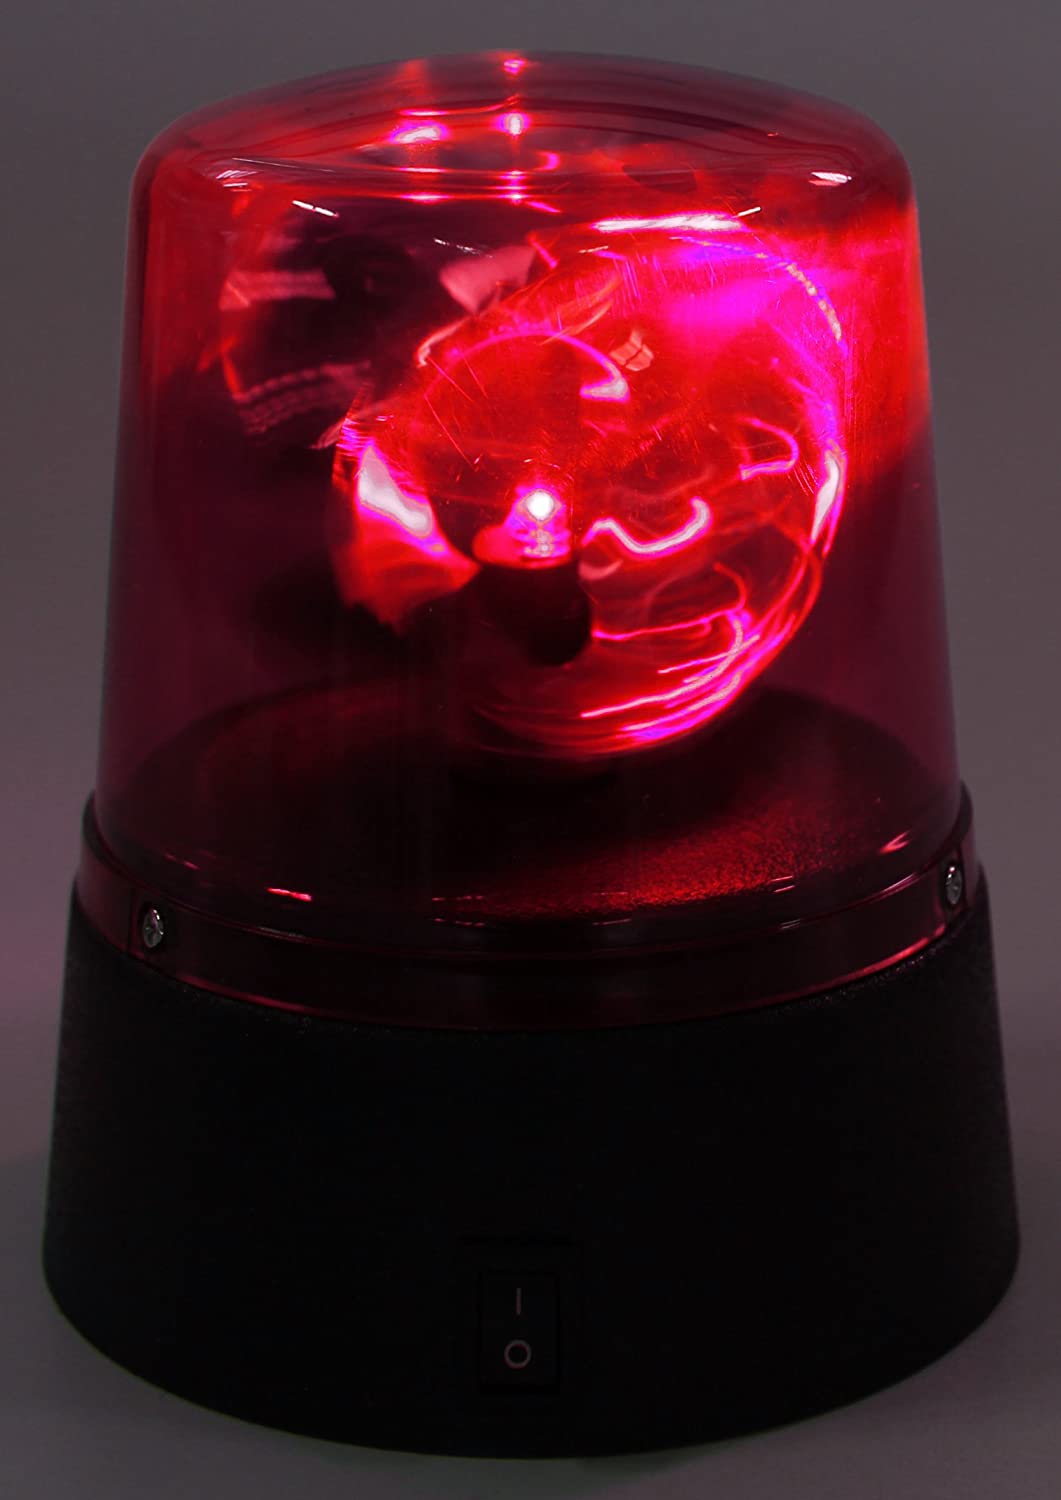 Lampada rotante sirena polizia a led di colore rosso